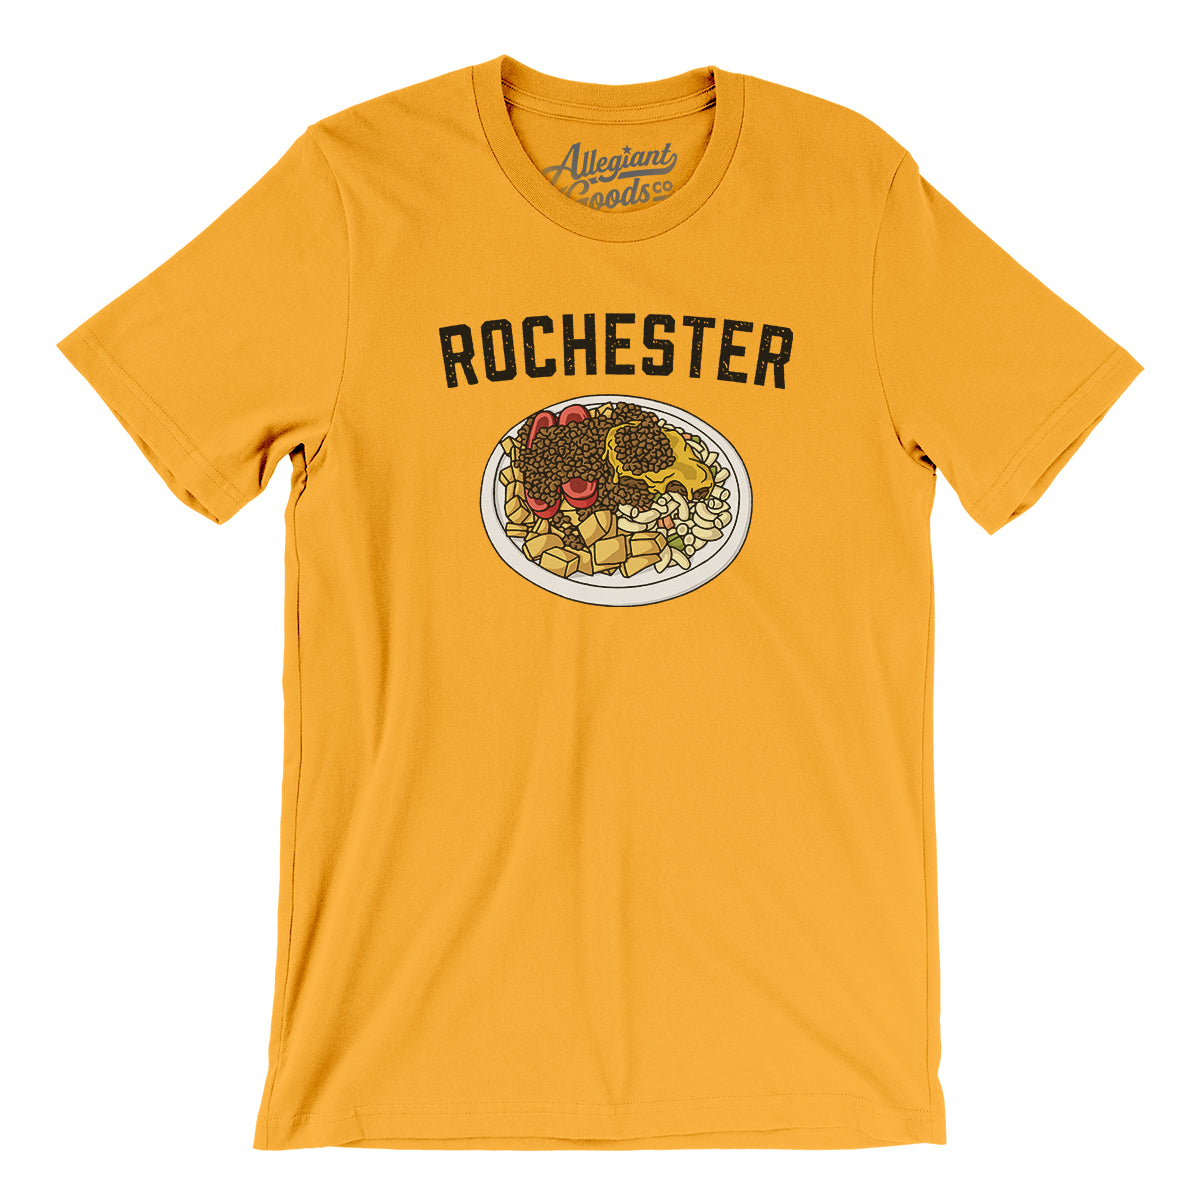 Rochester Garbage Plate Men/Unisex T-Shirt - Allegiant Goods Co.